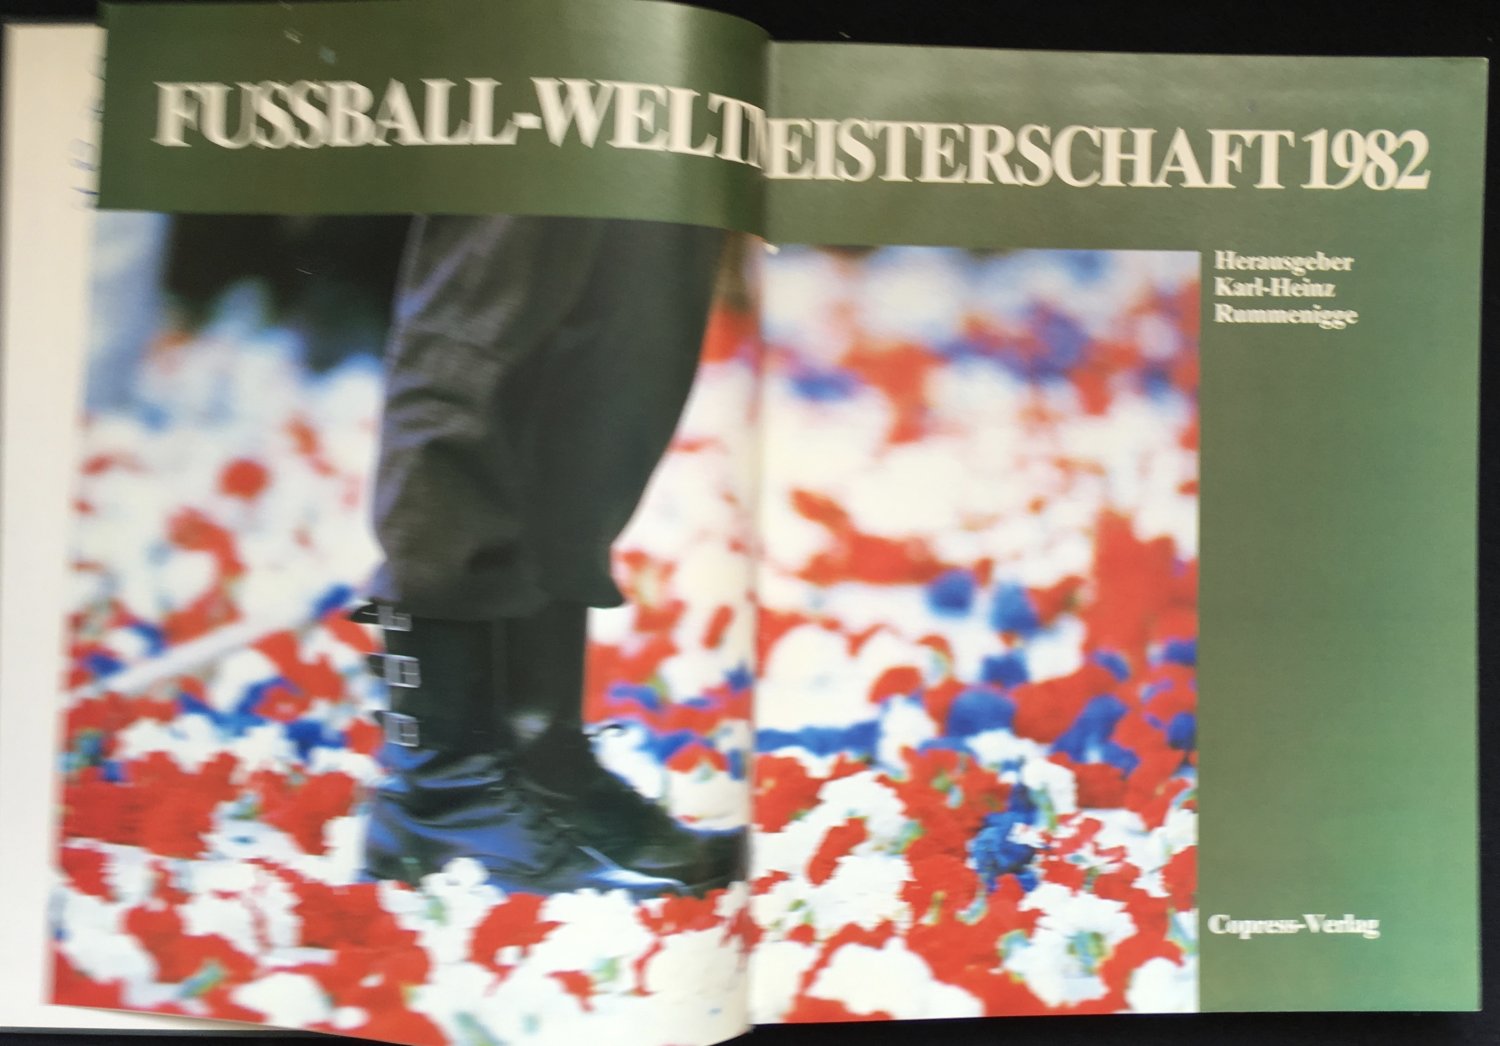 Fussball Weltmeisterschaft 1982 Karl Heinz Rummenigge Buch Gebraucht Kaufen A02jjwrd01zzx